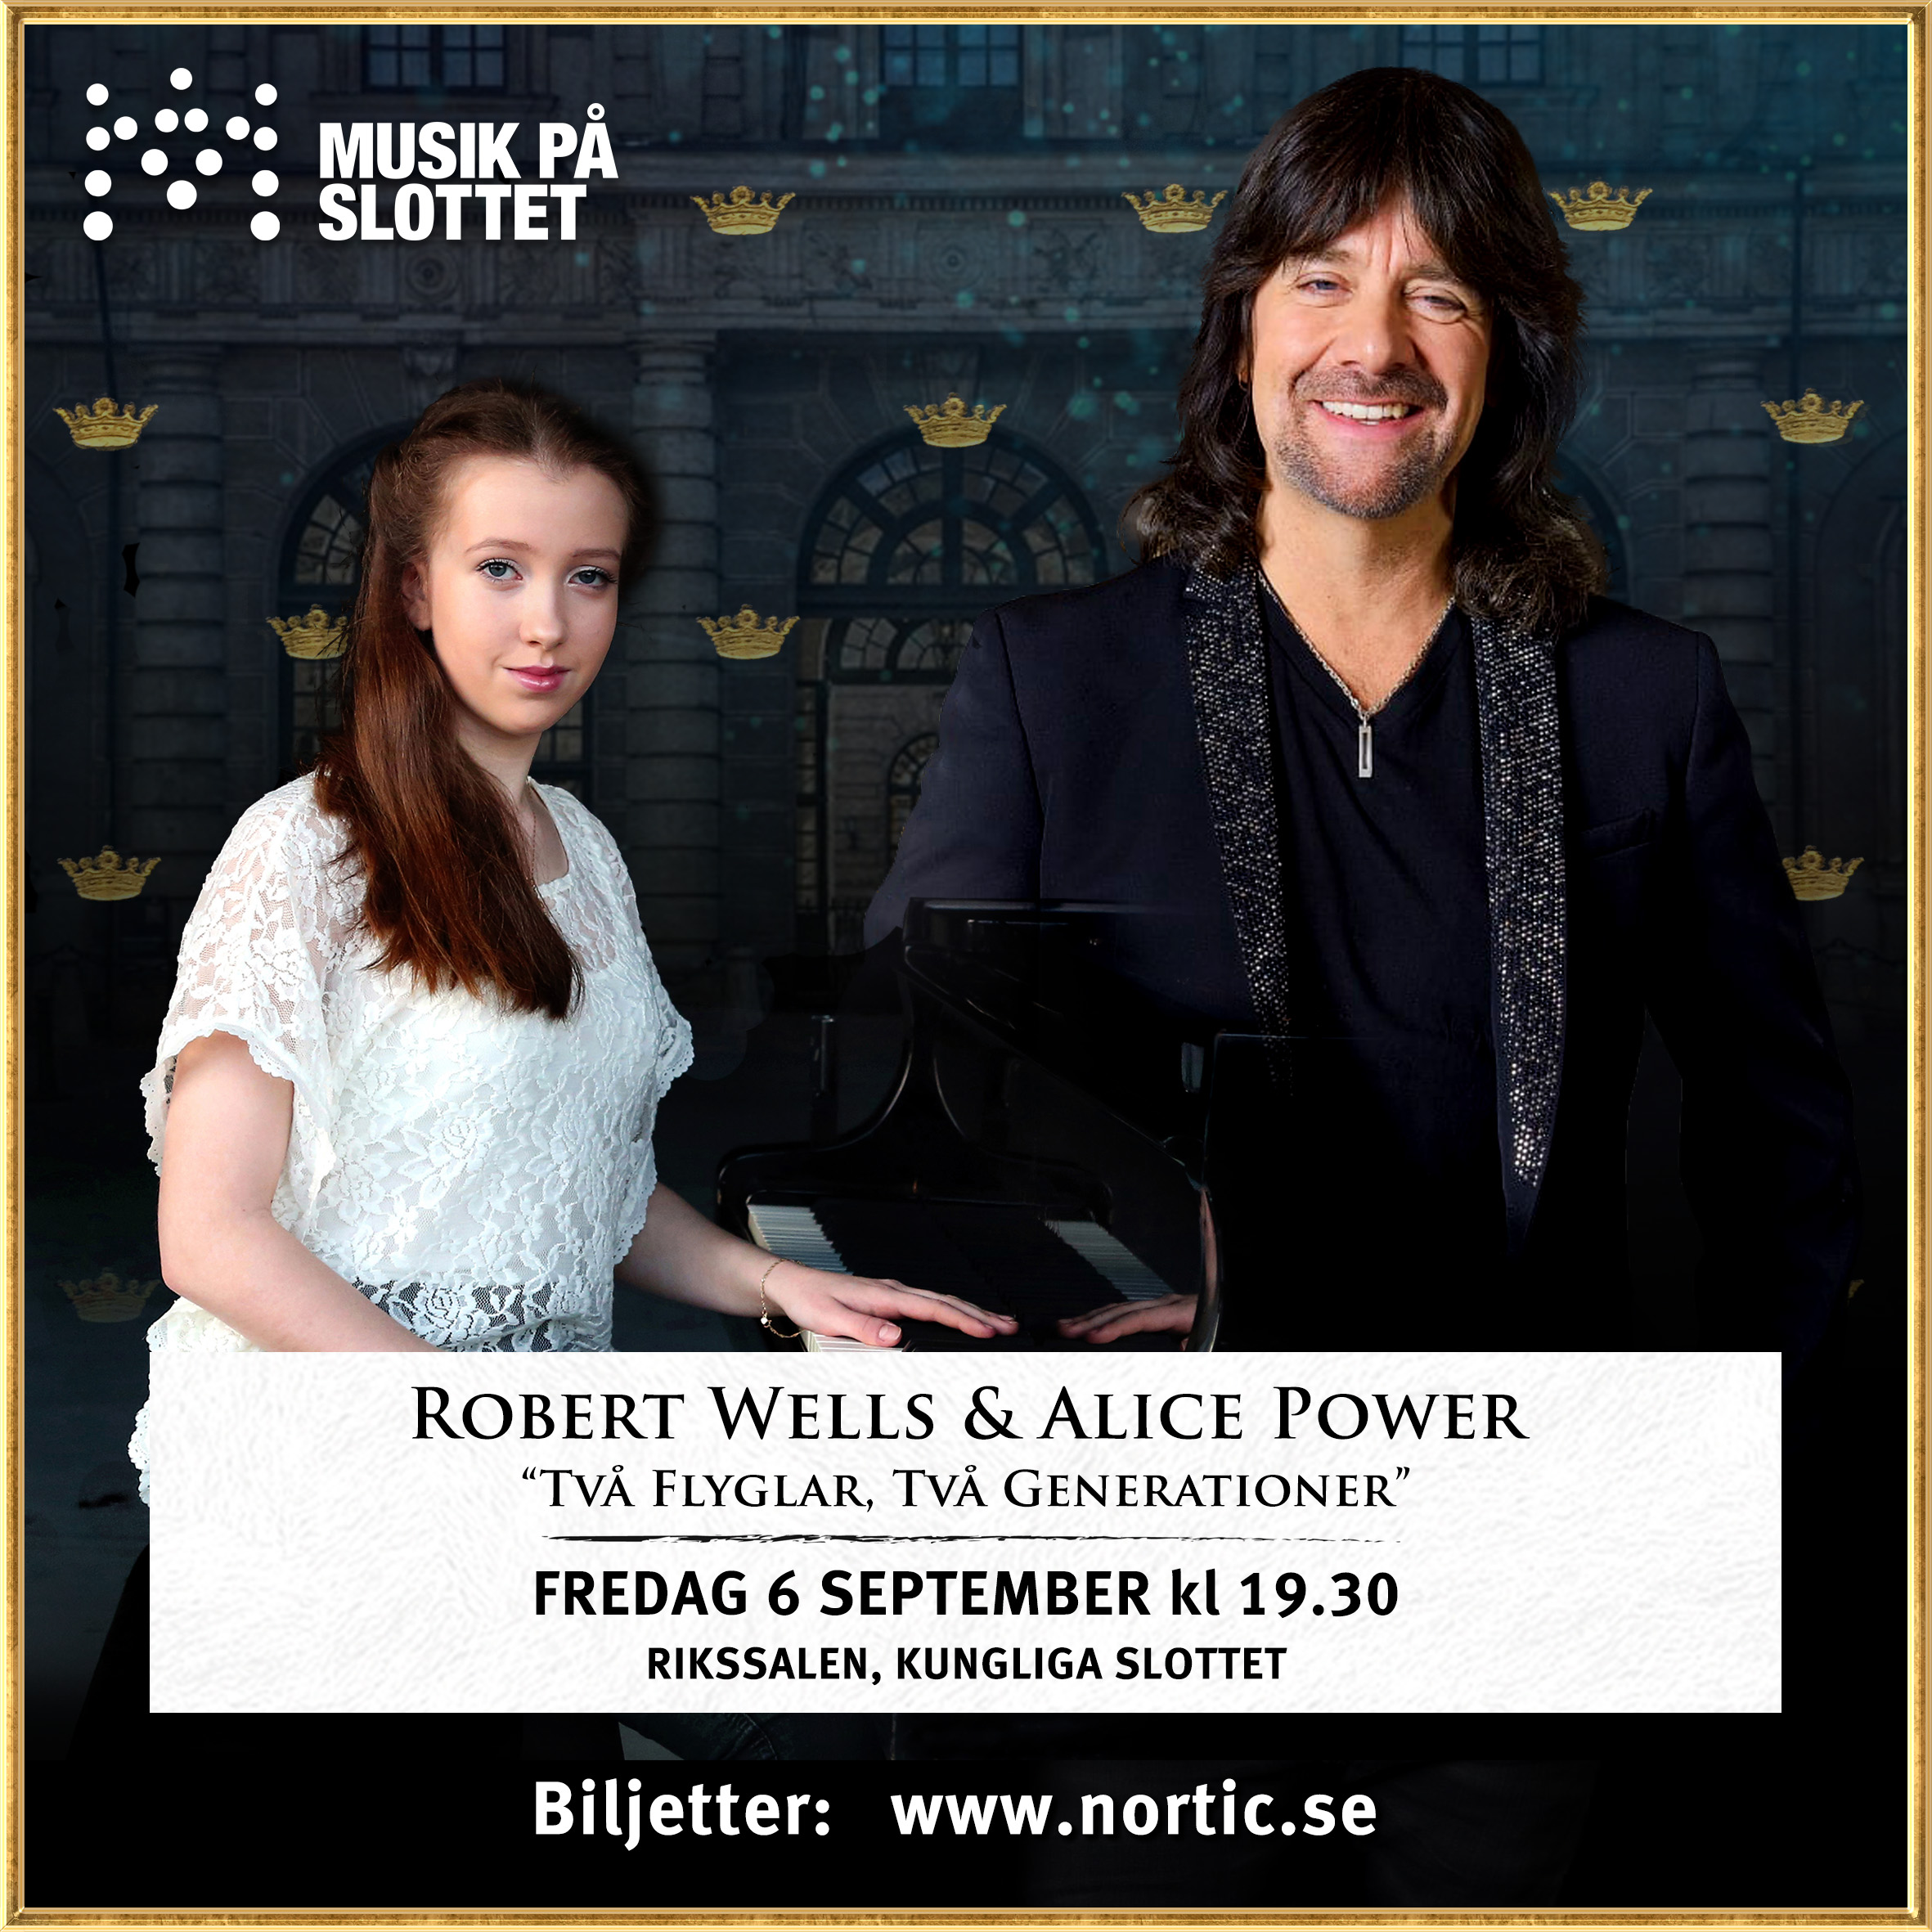 Robert Wells & Alice Power